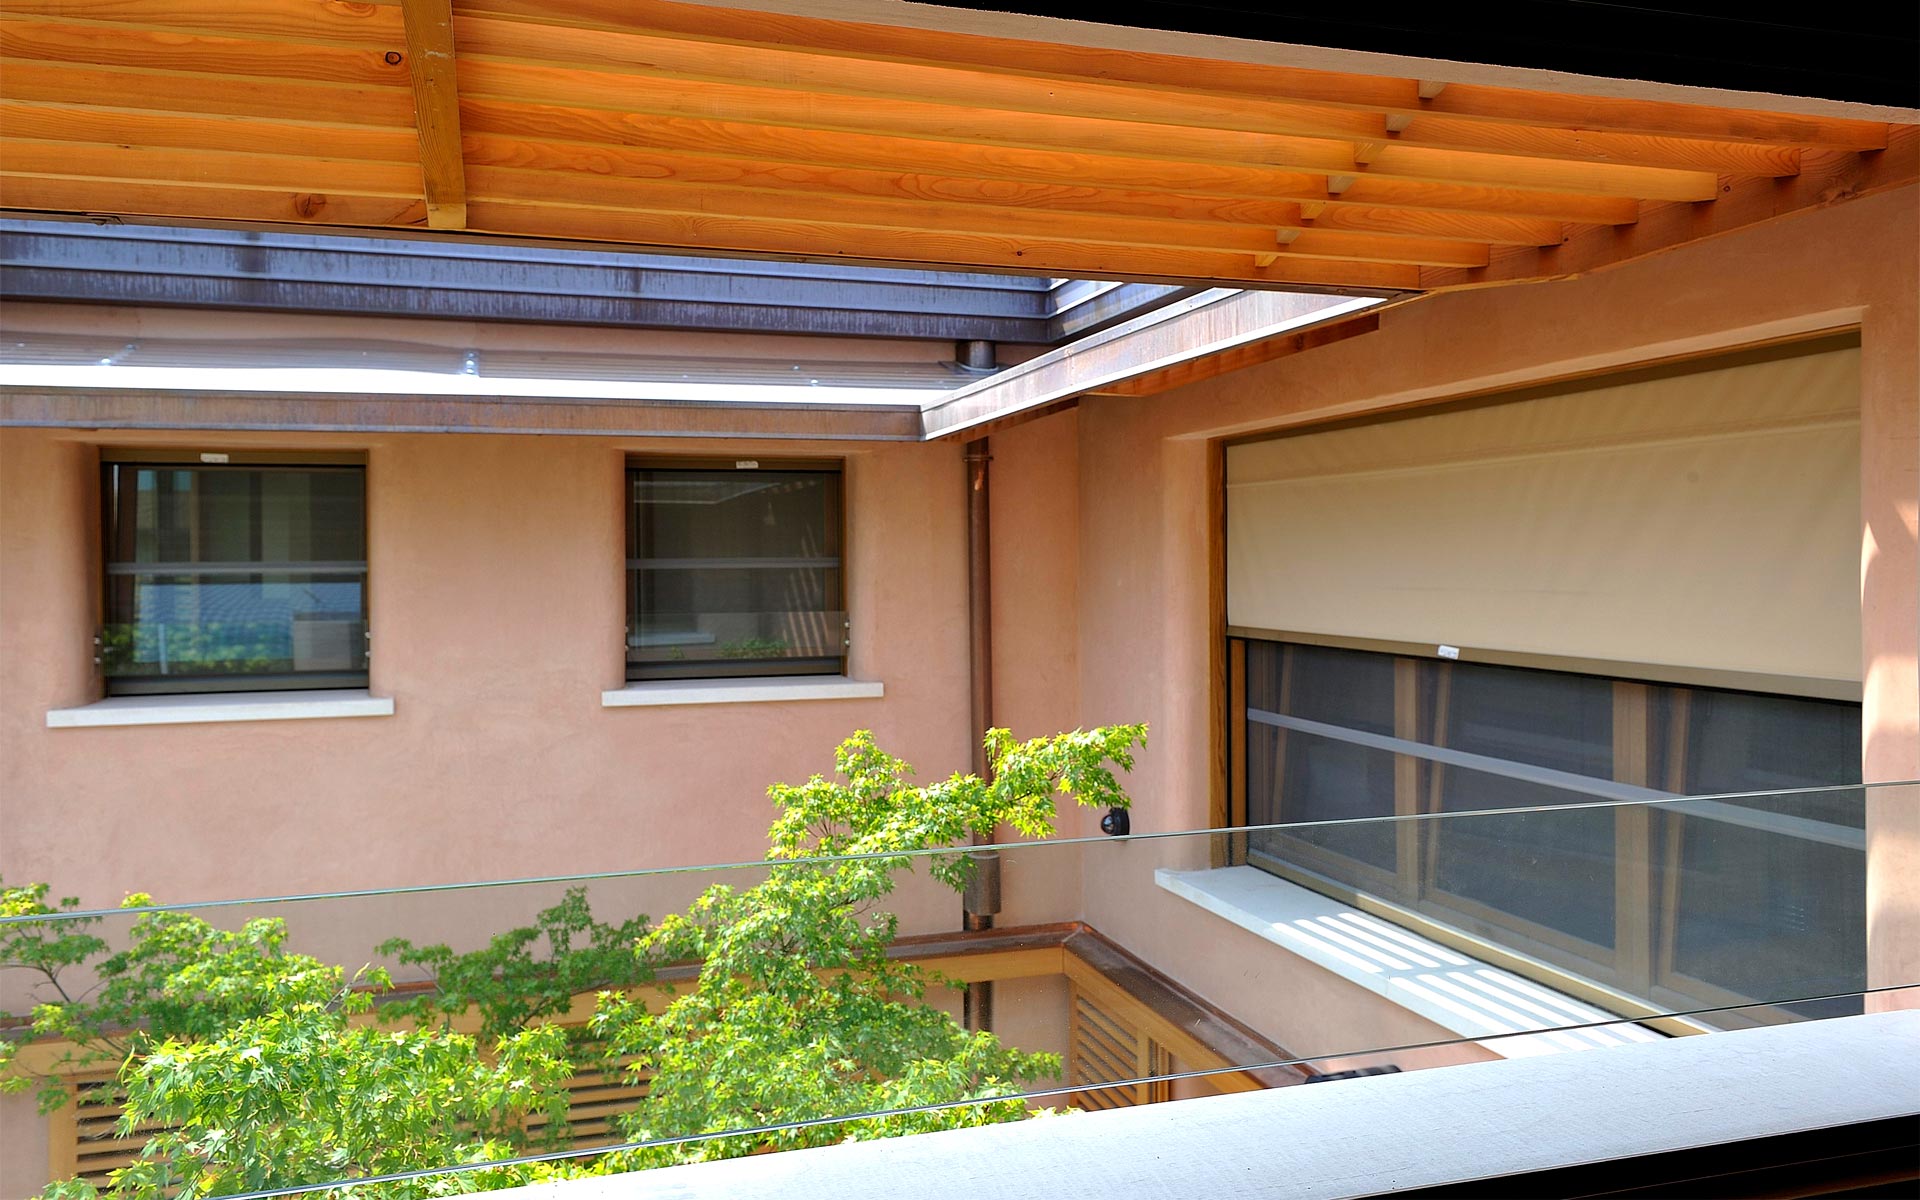 Residenza privata - San Donà di Piave - Realizzazioni - Globarch BioArchitettura - Architetto Ermenegildo Anoja - corte frangisole legno parapetto vetro